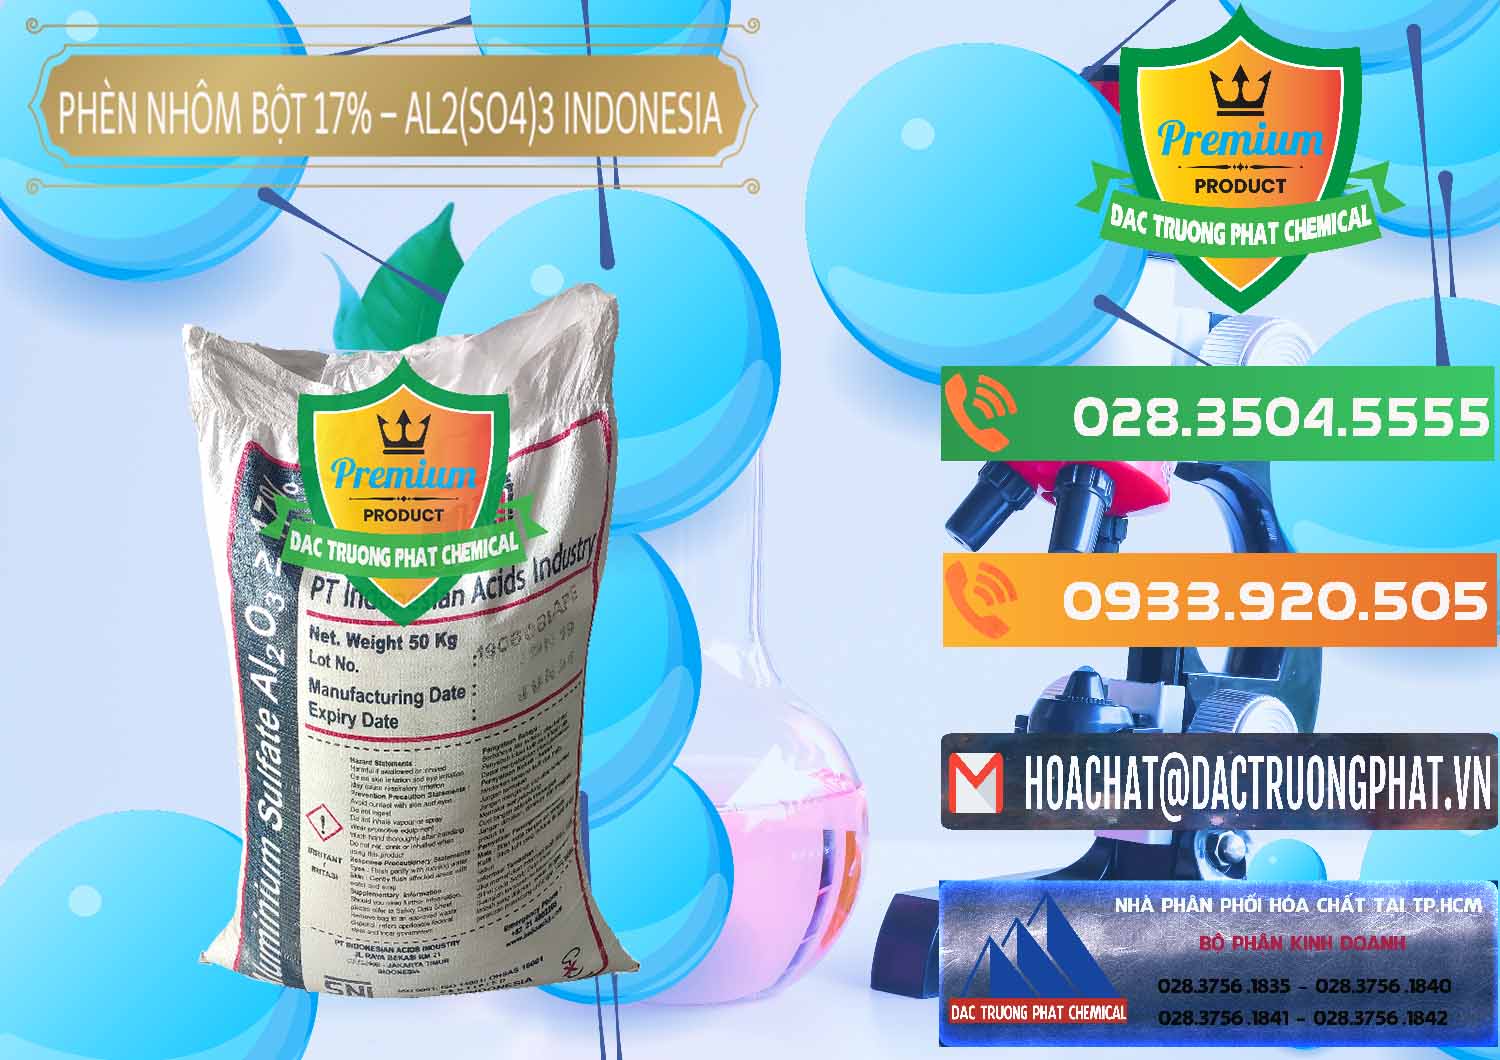 Cty bán - cung ứng Phèn Nhôm Bột - Al2(SO4)3 17% bao 50kg Indonesia - 0112 - Công ty chuyên nhập khẩu _ cung cấp hóa chất tại TP.HCM - hoachatxulynuoc.com.vn